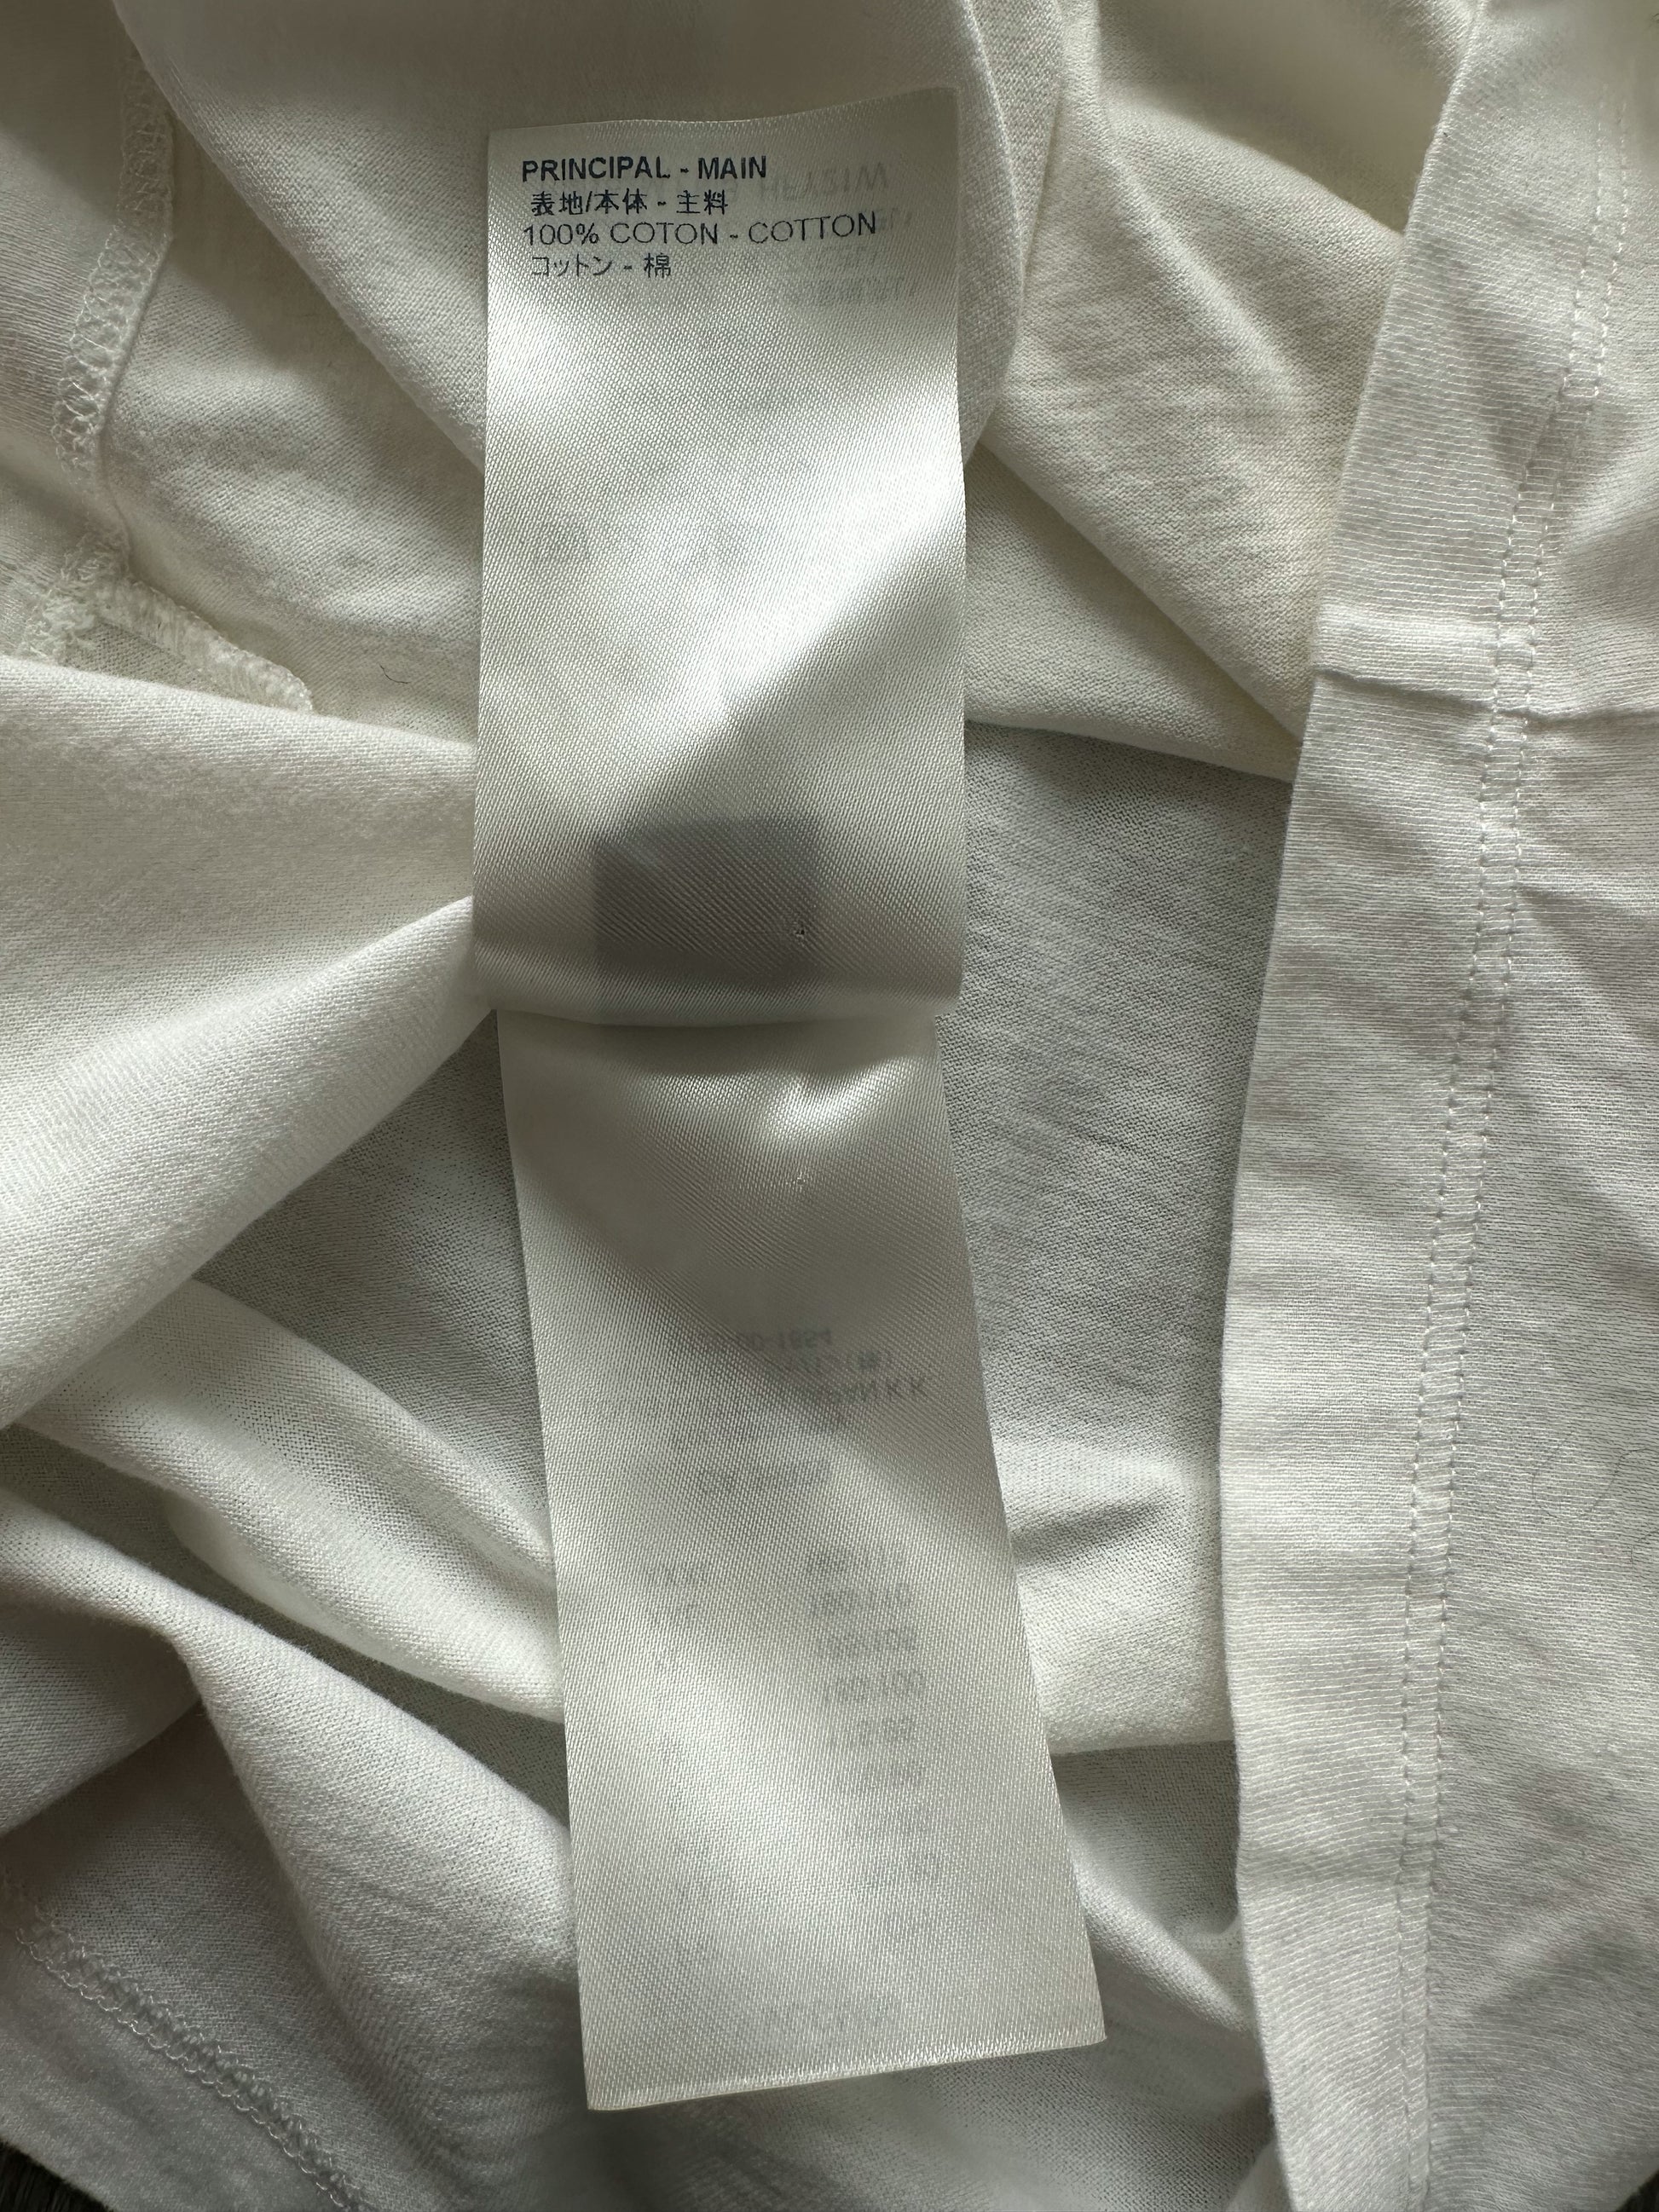 Louis Vuitton White Jersey Upside Down Logo Print T-Shirt L Louis